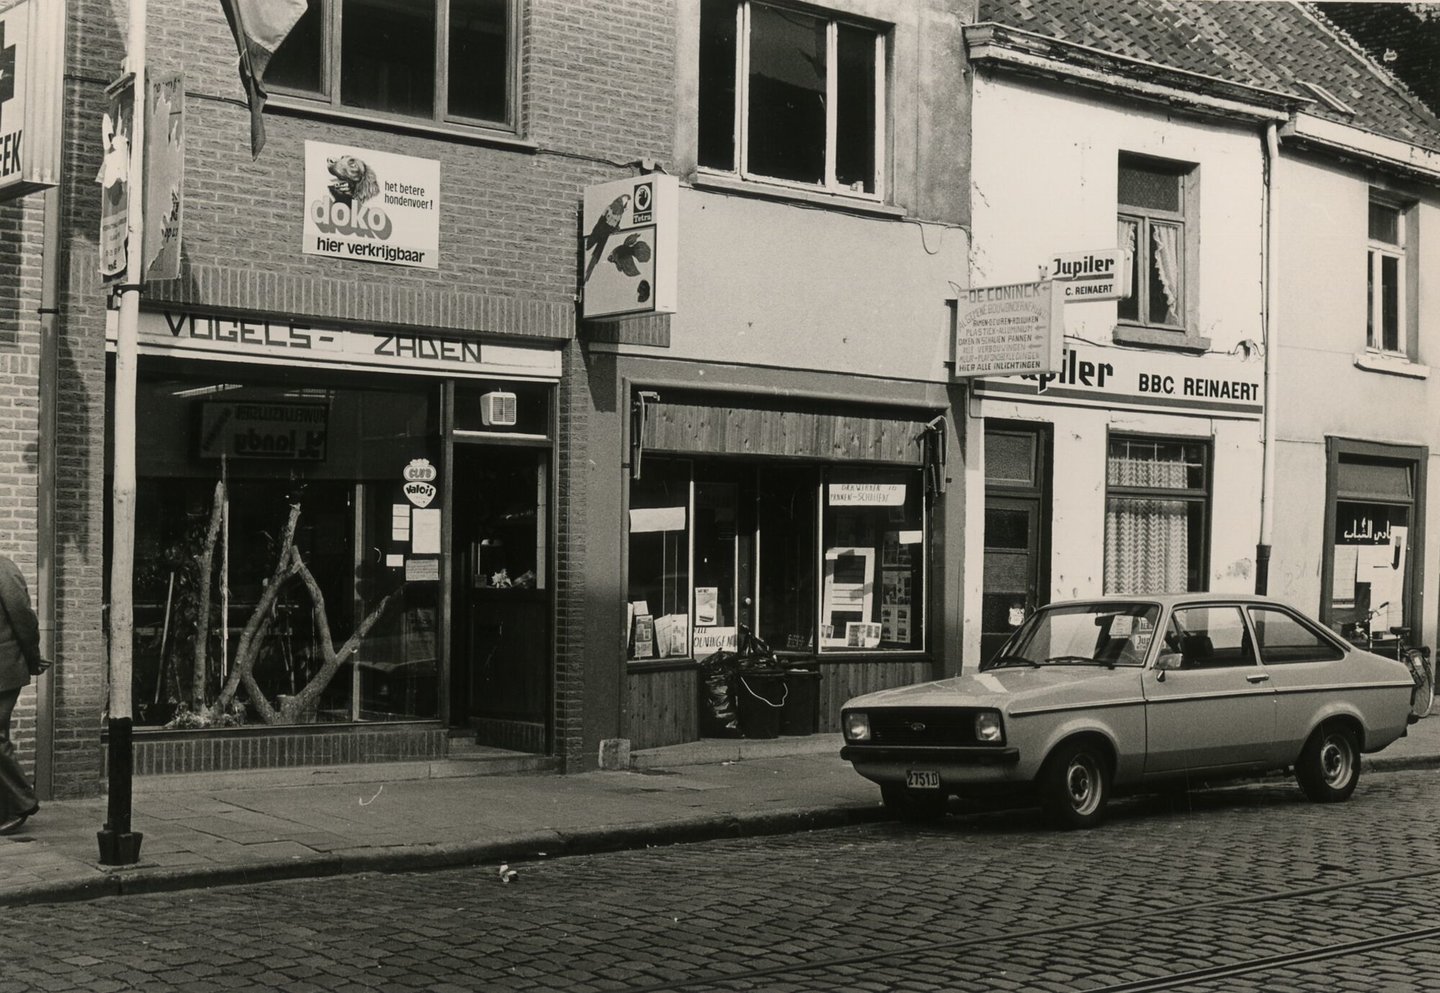 Straatbeeld met winkel en horecazaken in Gent